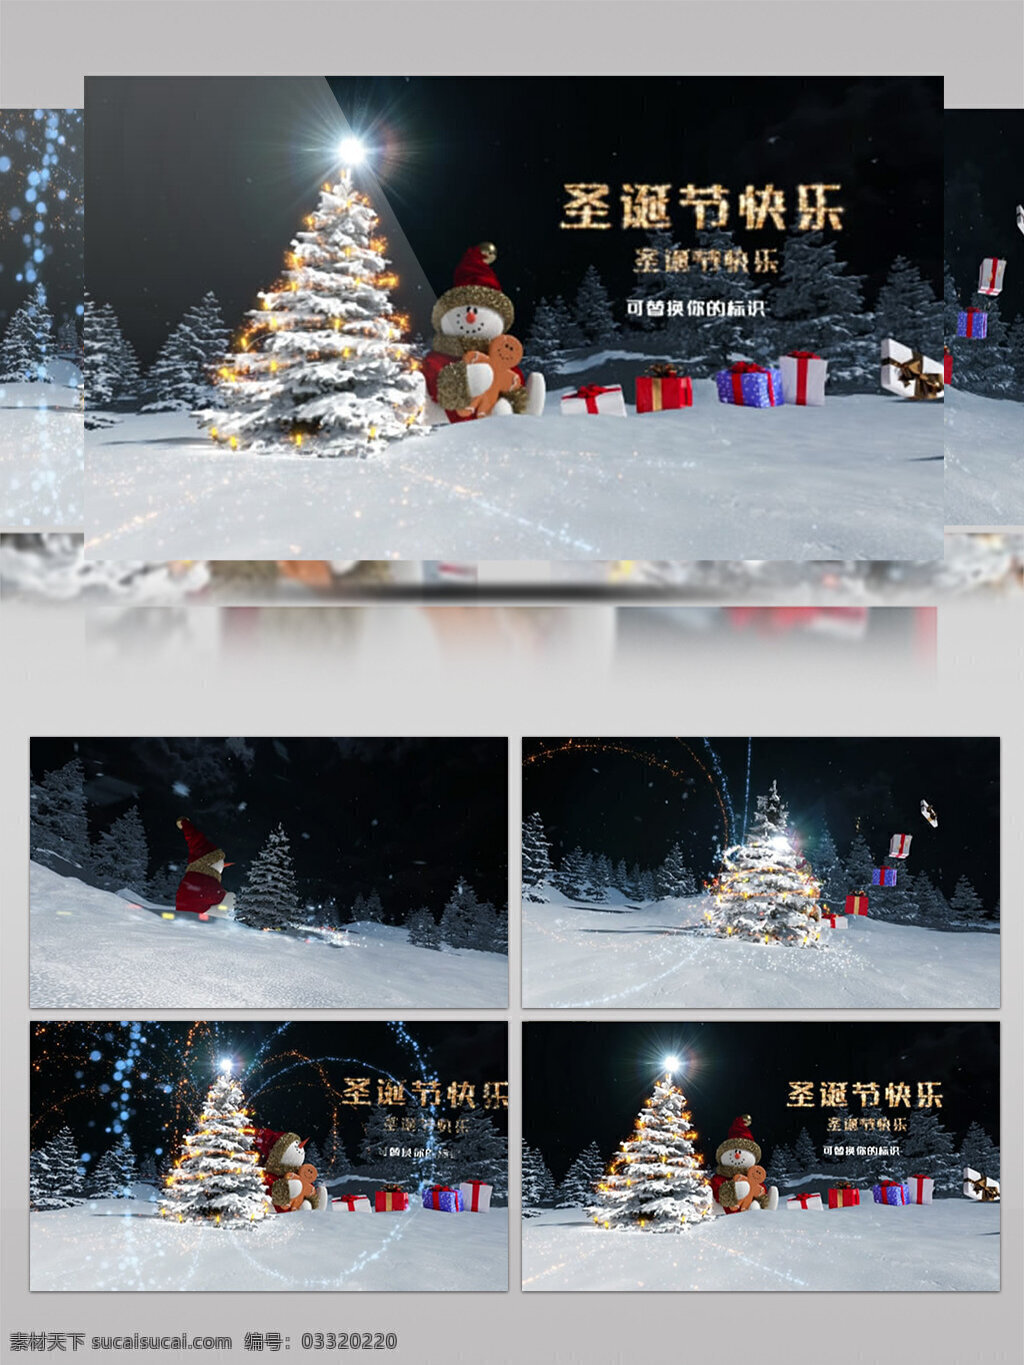 雪人 烟花 圣诞节 开场 动画 ae 模板 新年祝福 新年快乐 元旦 圣诞节开场 2019年